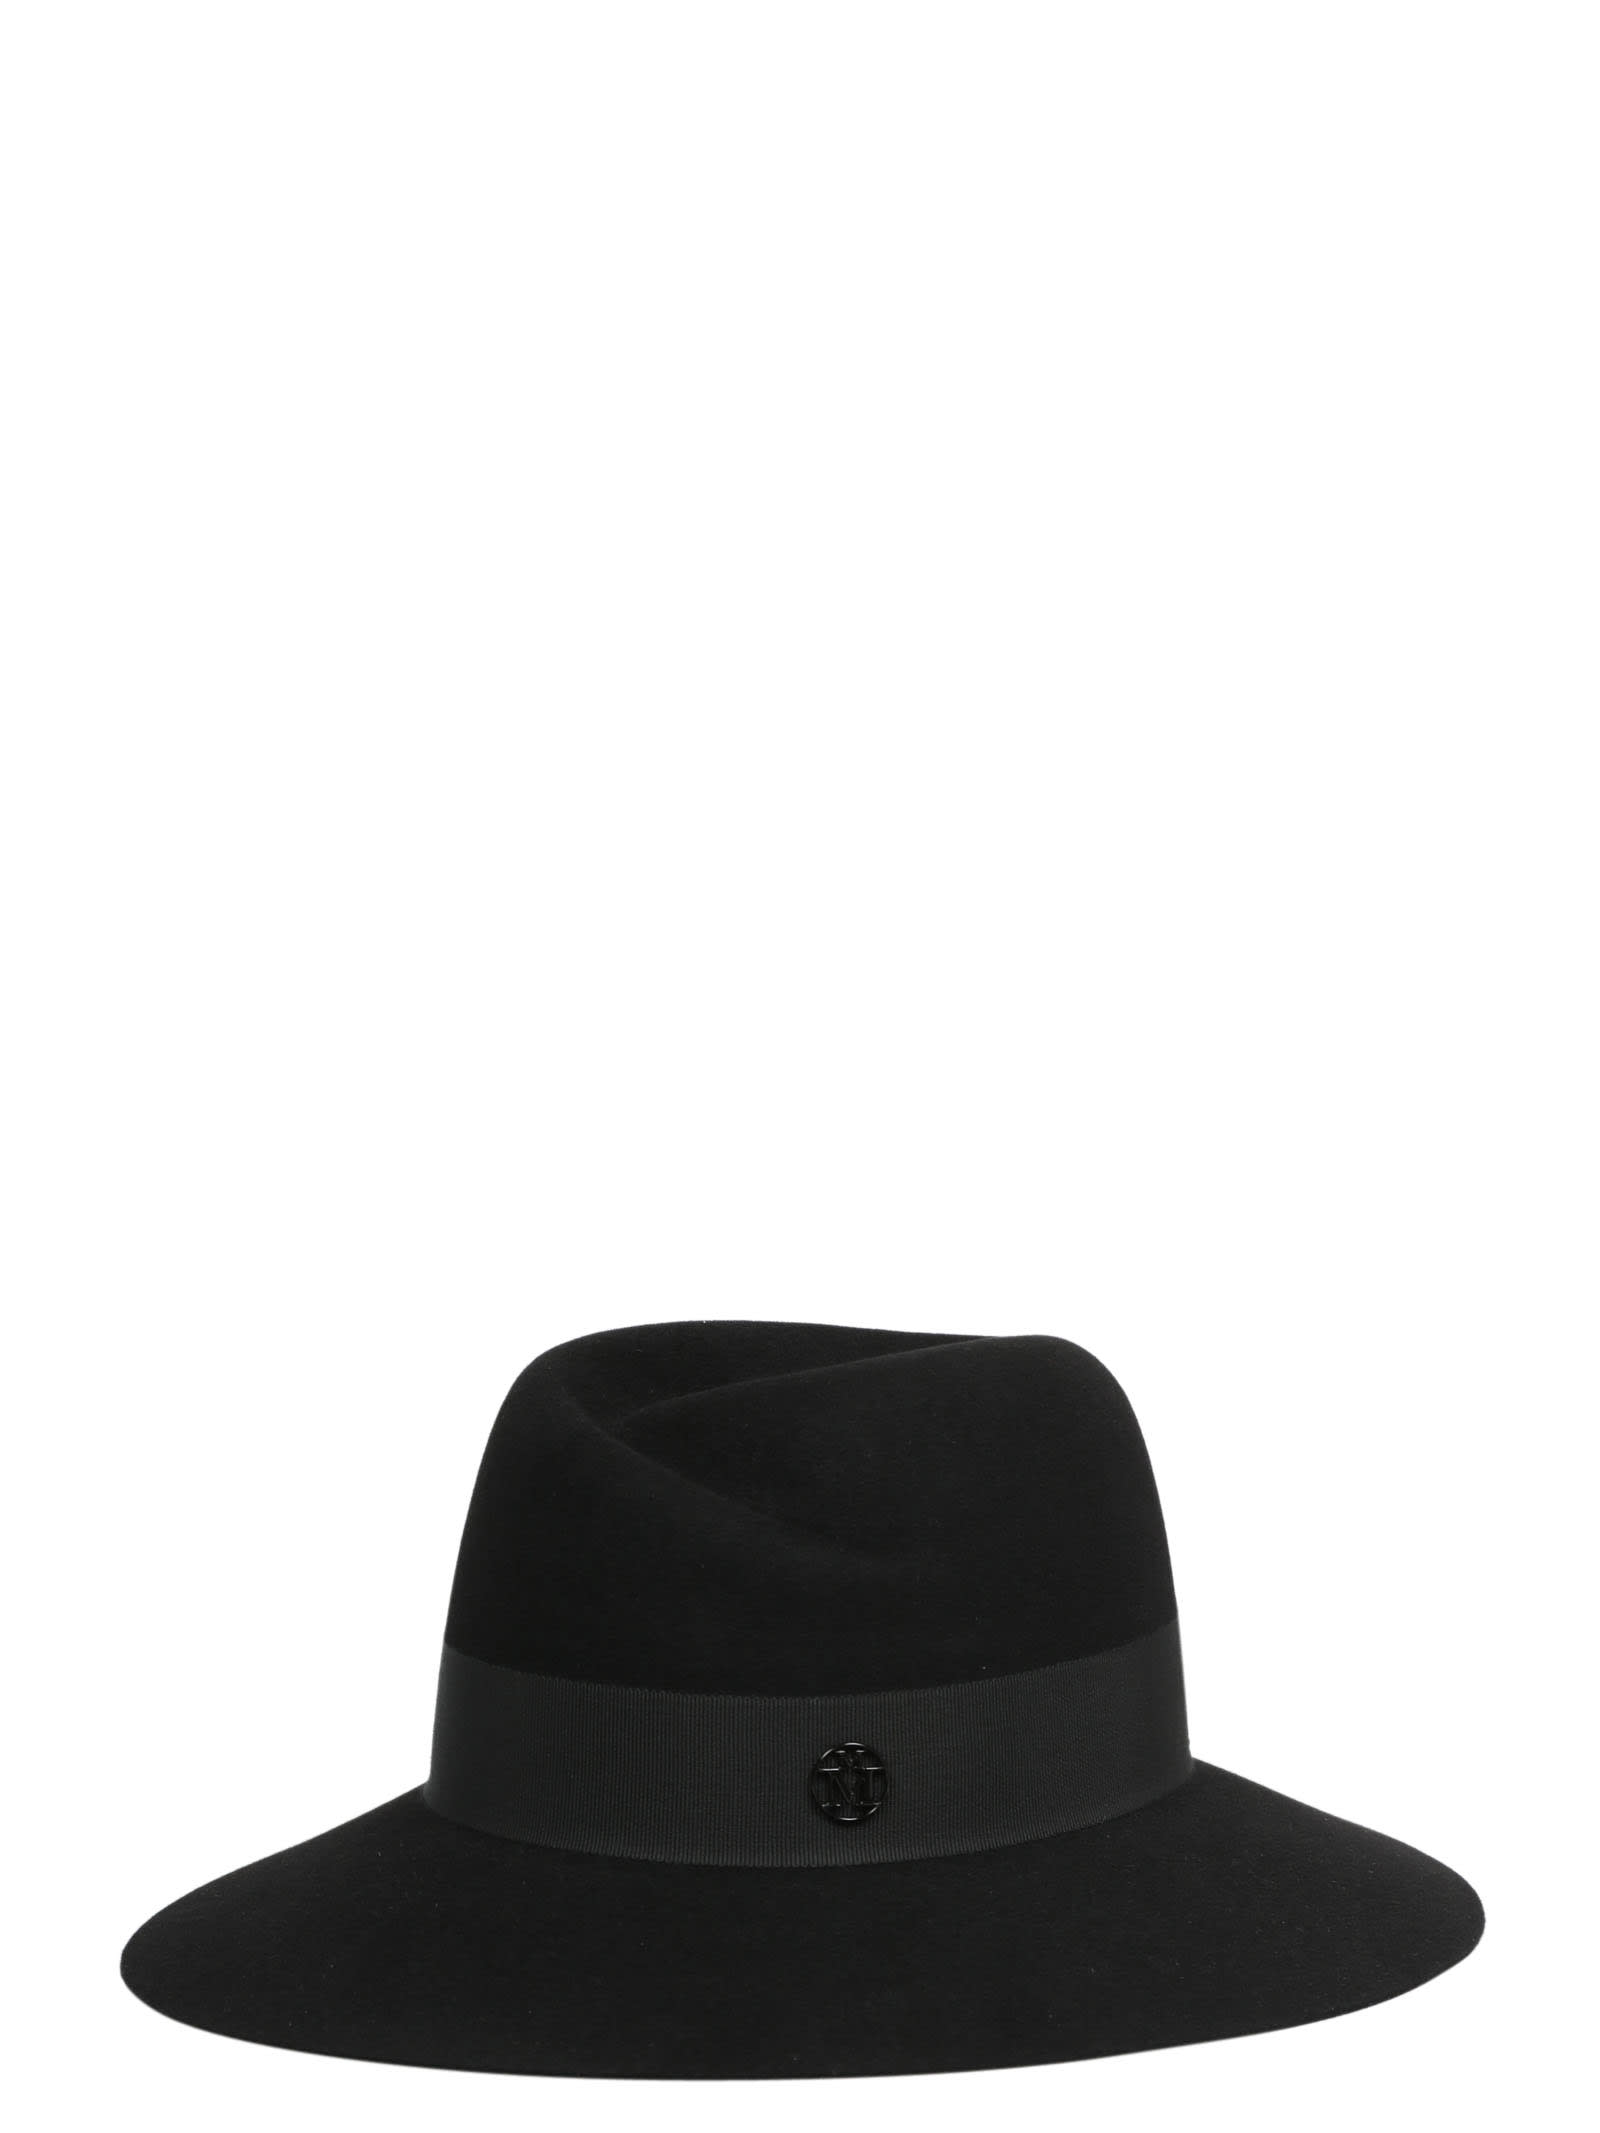 Maison Michel Virginie Timeless Fedora Hat